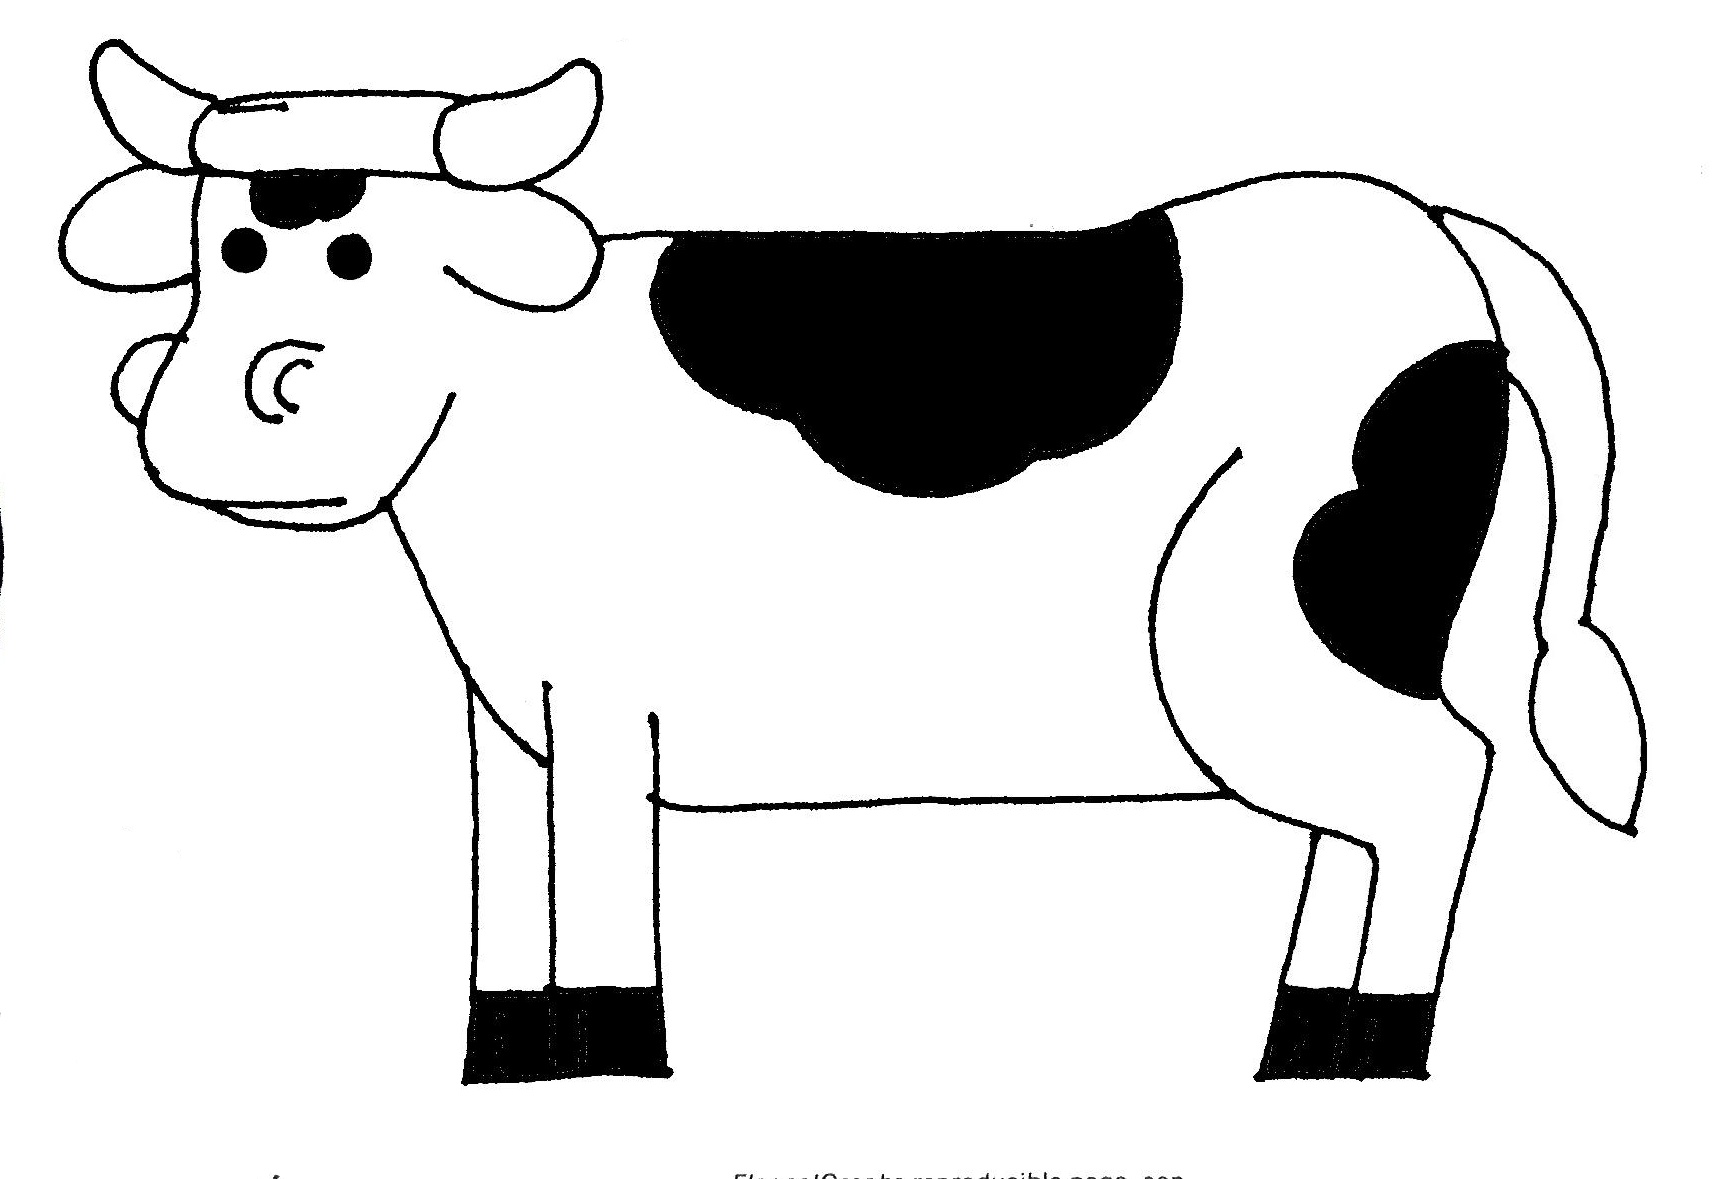 Cow Fan cartoon outline